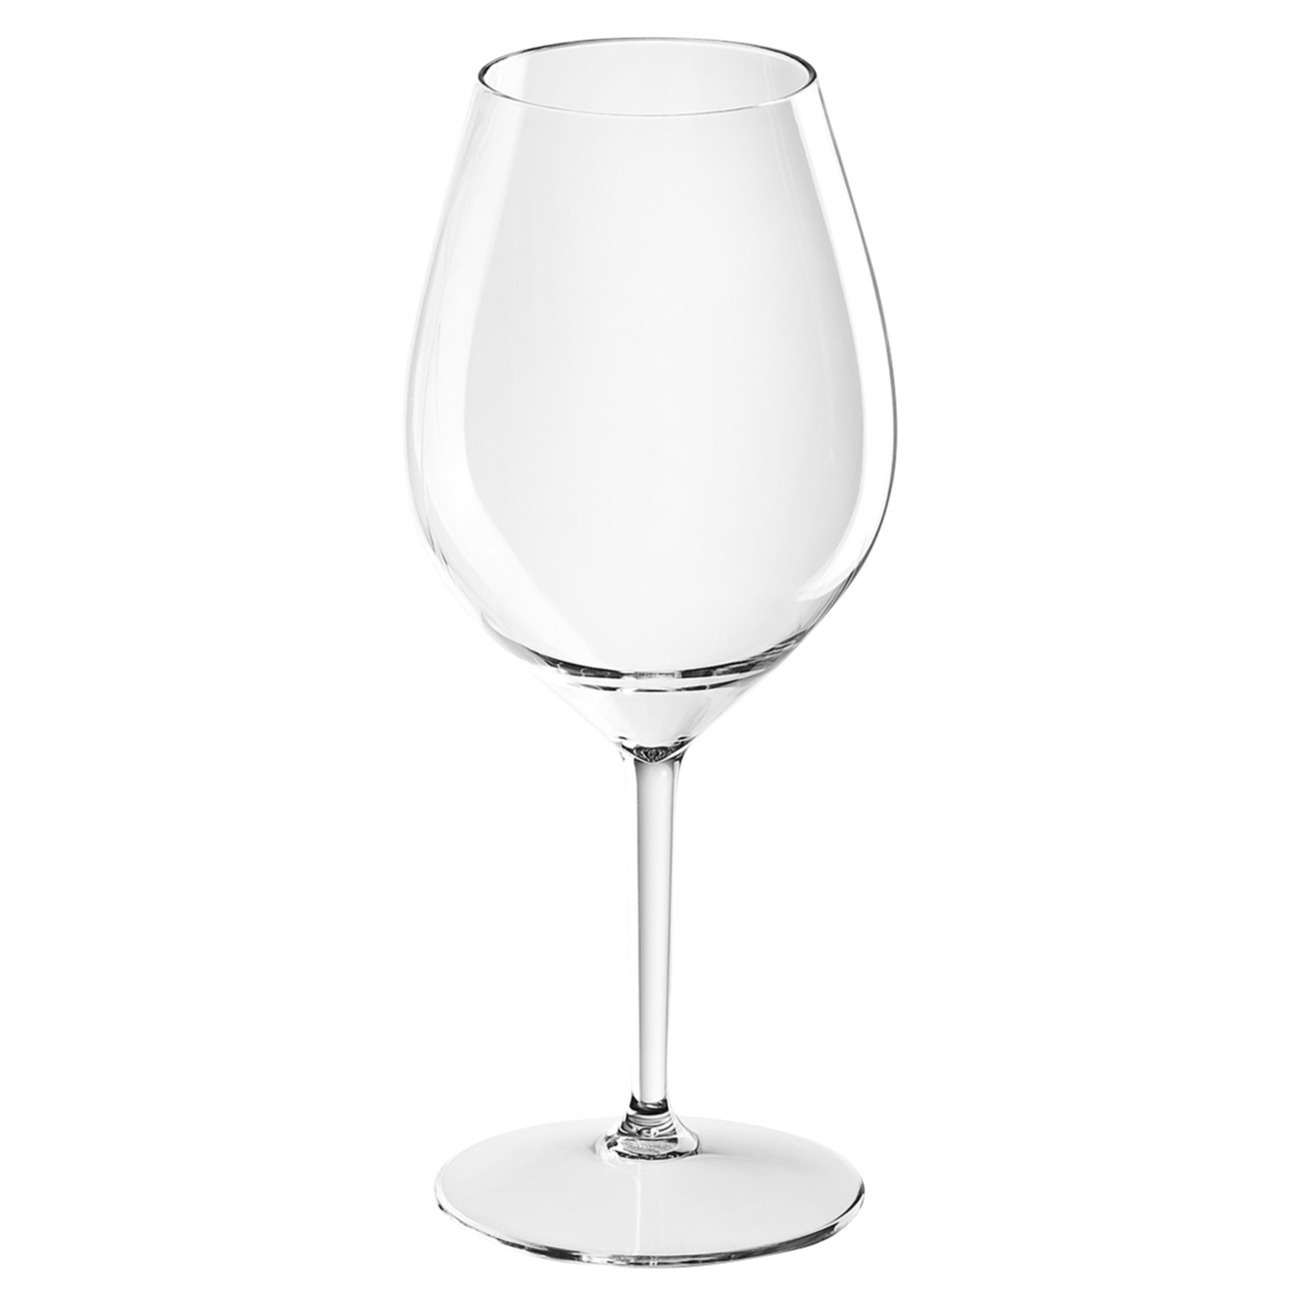 1x Witte of rode wijn wijnglazen 51 cl/510 ml van onbreekbaar transparant kunststof -